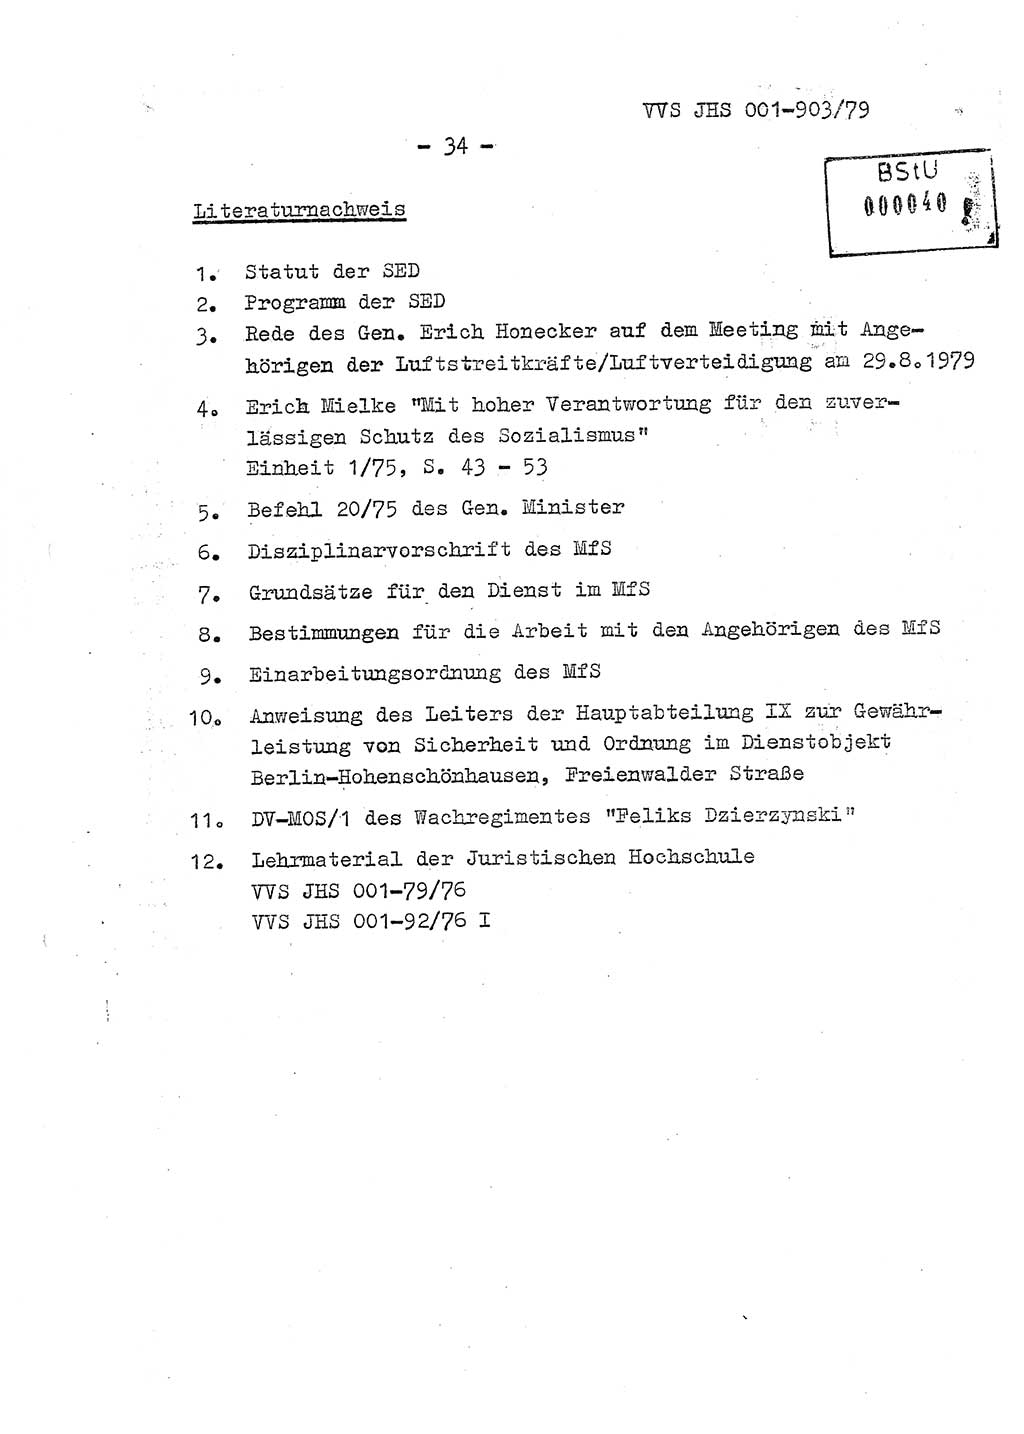 Fachschulabschlußarbeit Oberleutnant Jochen Pfeffer (HA Ⅸ/AGL), Ministerium für Staatssicherheit (MfS) [Deutsche Demokratische Republik (DDR)], Juristische Hochschule (JHS), Vertrauliche Verschlußsache (VVS) 001-903/79, Potsdam 1979, Seite 34 (FS-Abschl.-Arb. MfS DDR JHS VVS 001-903/79 1979, S. 34)